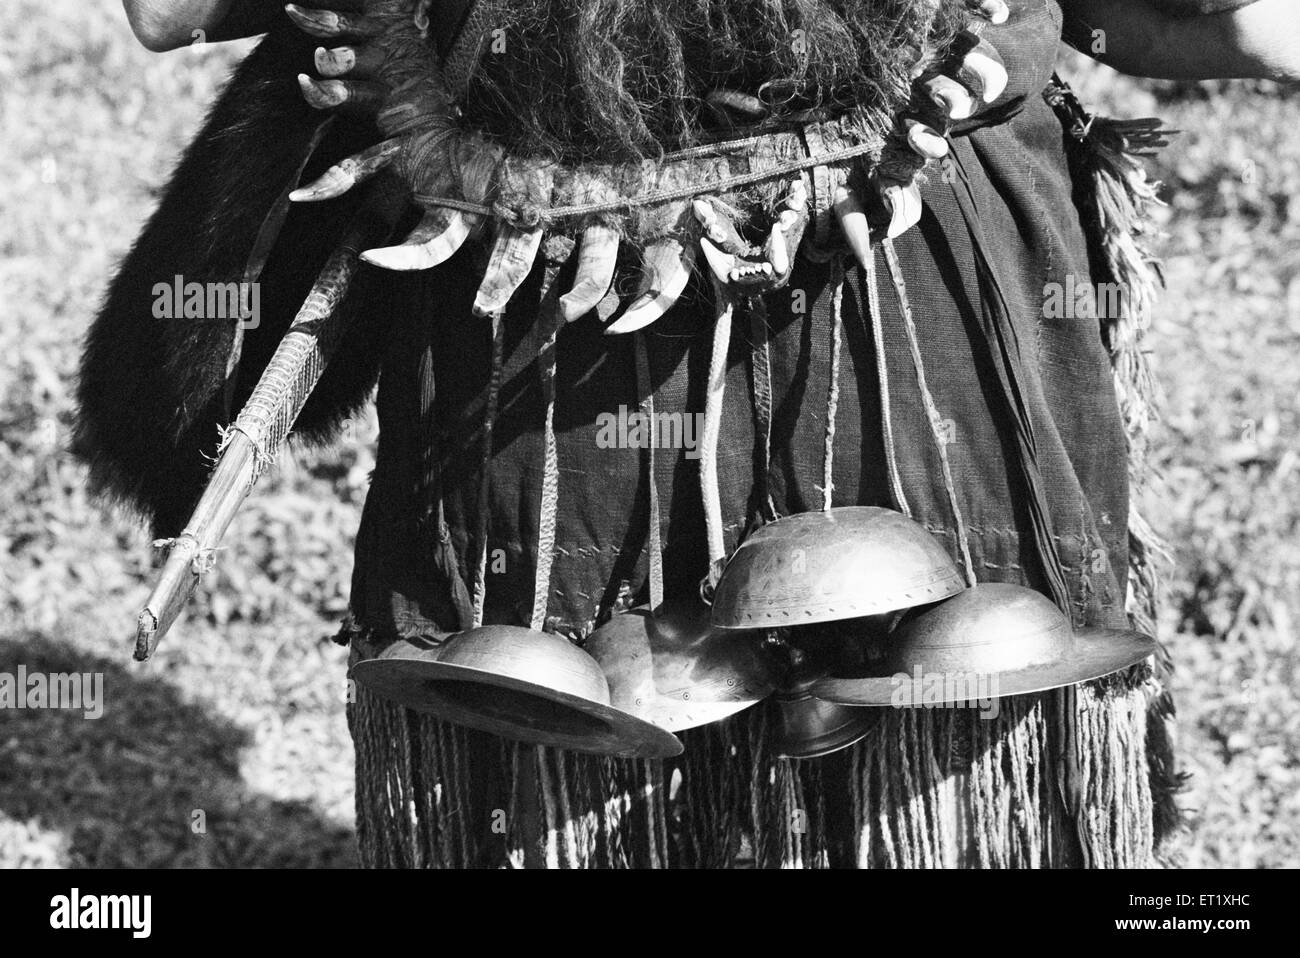 Metal Cymbals verwendet, um Schmuck Musik liefern ; Hill Miri Tribe ; Subansiri ; Kamle ; Arunachal Pradesh ; Indien ; Asien ; alter Jahrgang 1900s Bild Stockfoto